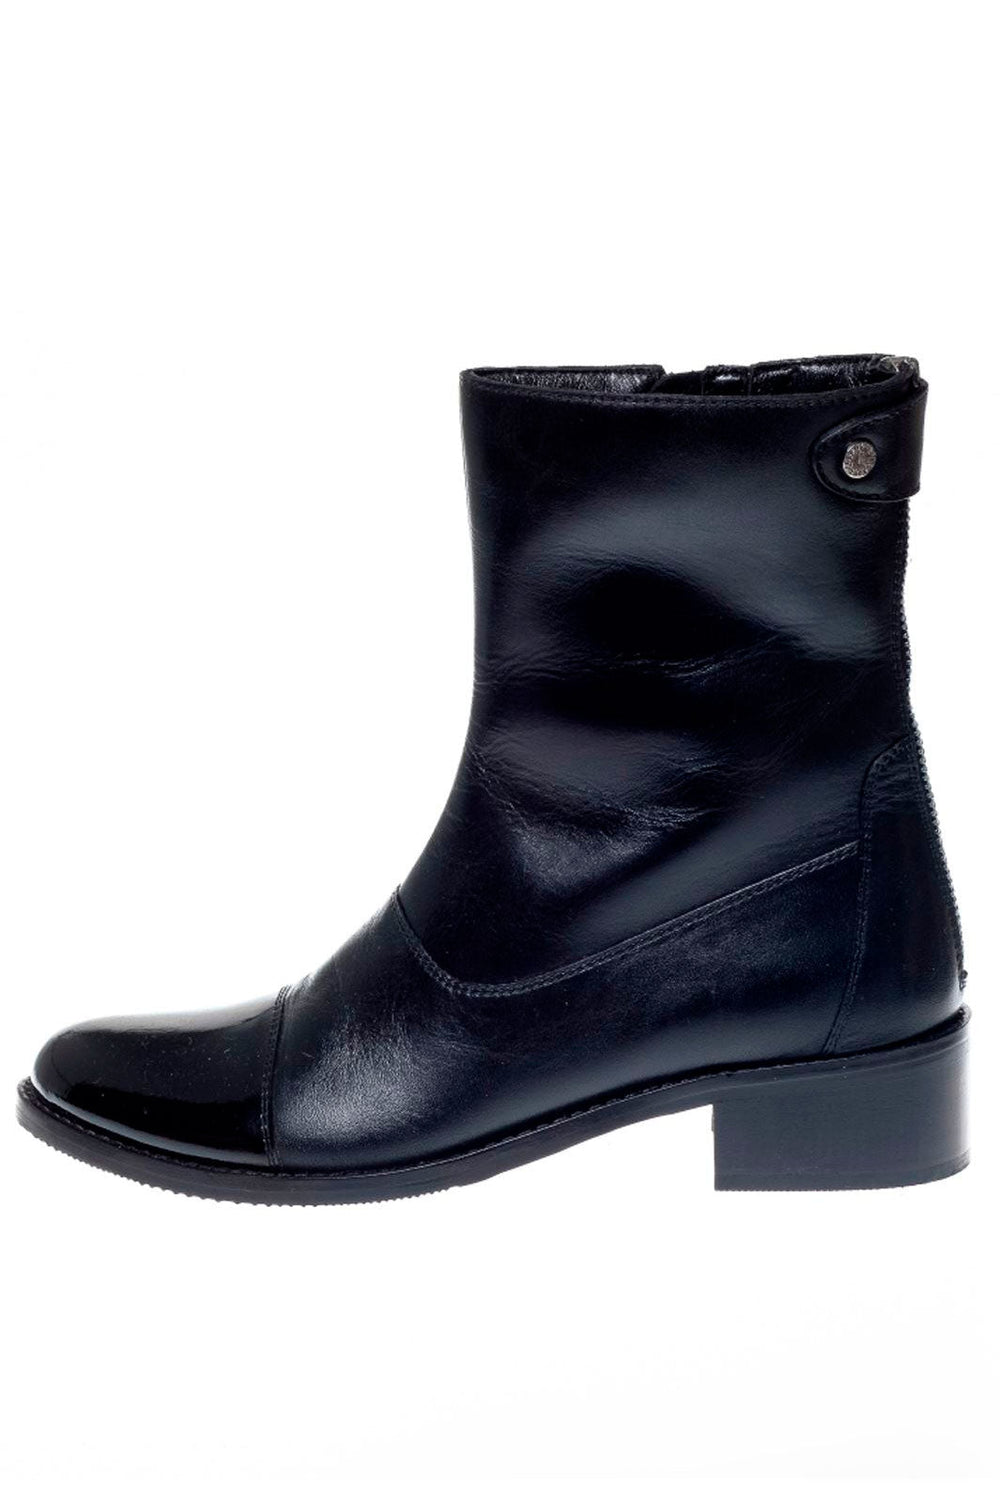 Copenhagen Shoes - She Patent 21 - 001 Black Støvler 